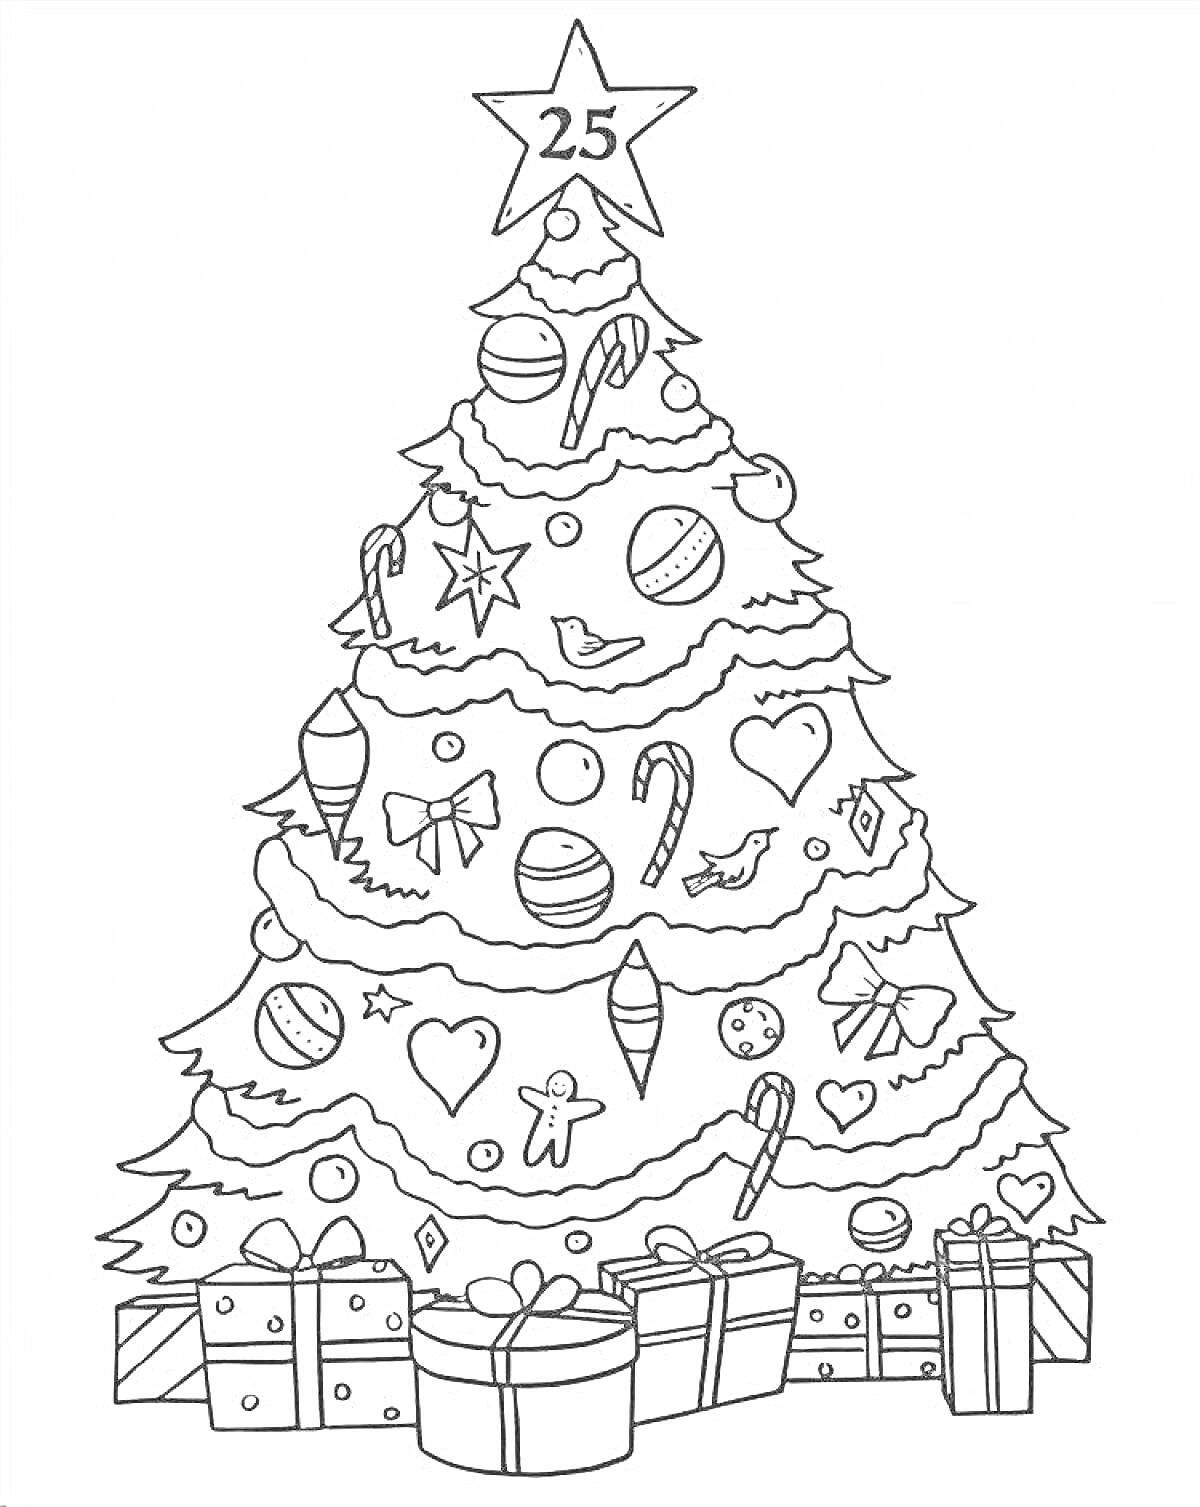 Нарядная елка с подарками, украшенная шарами, сердечками, звездочками, конфетами, бантиками и пряничными человечками